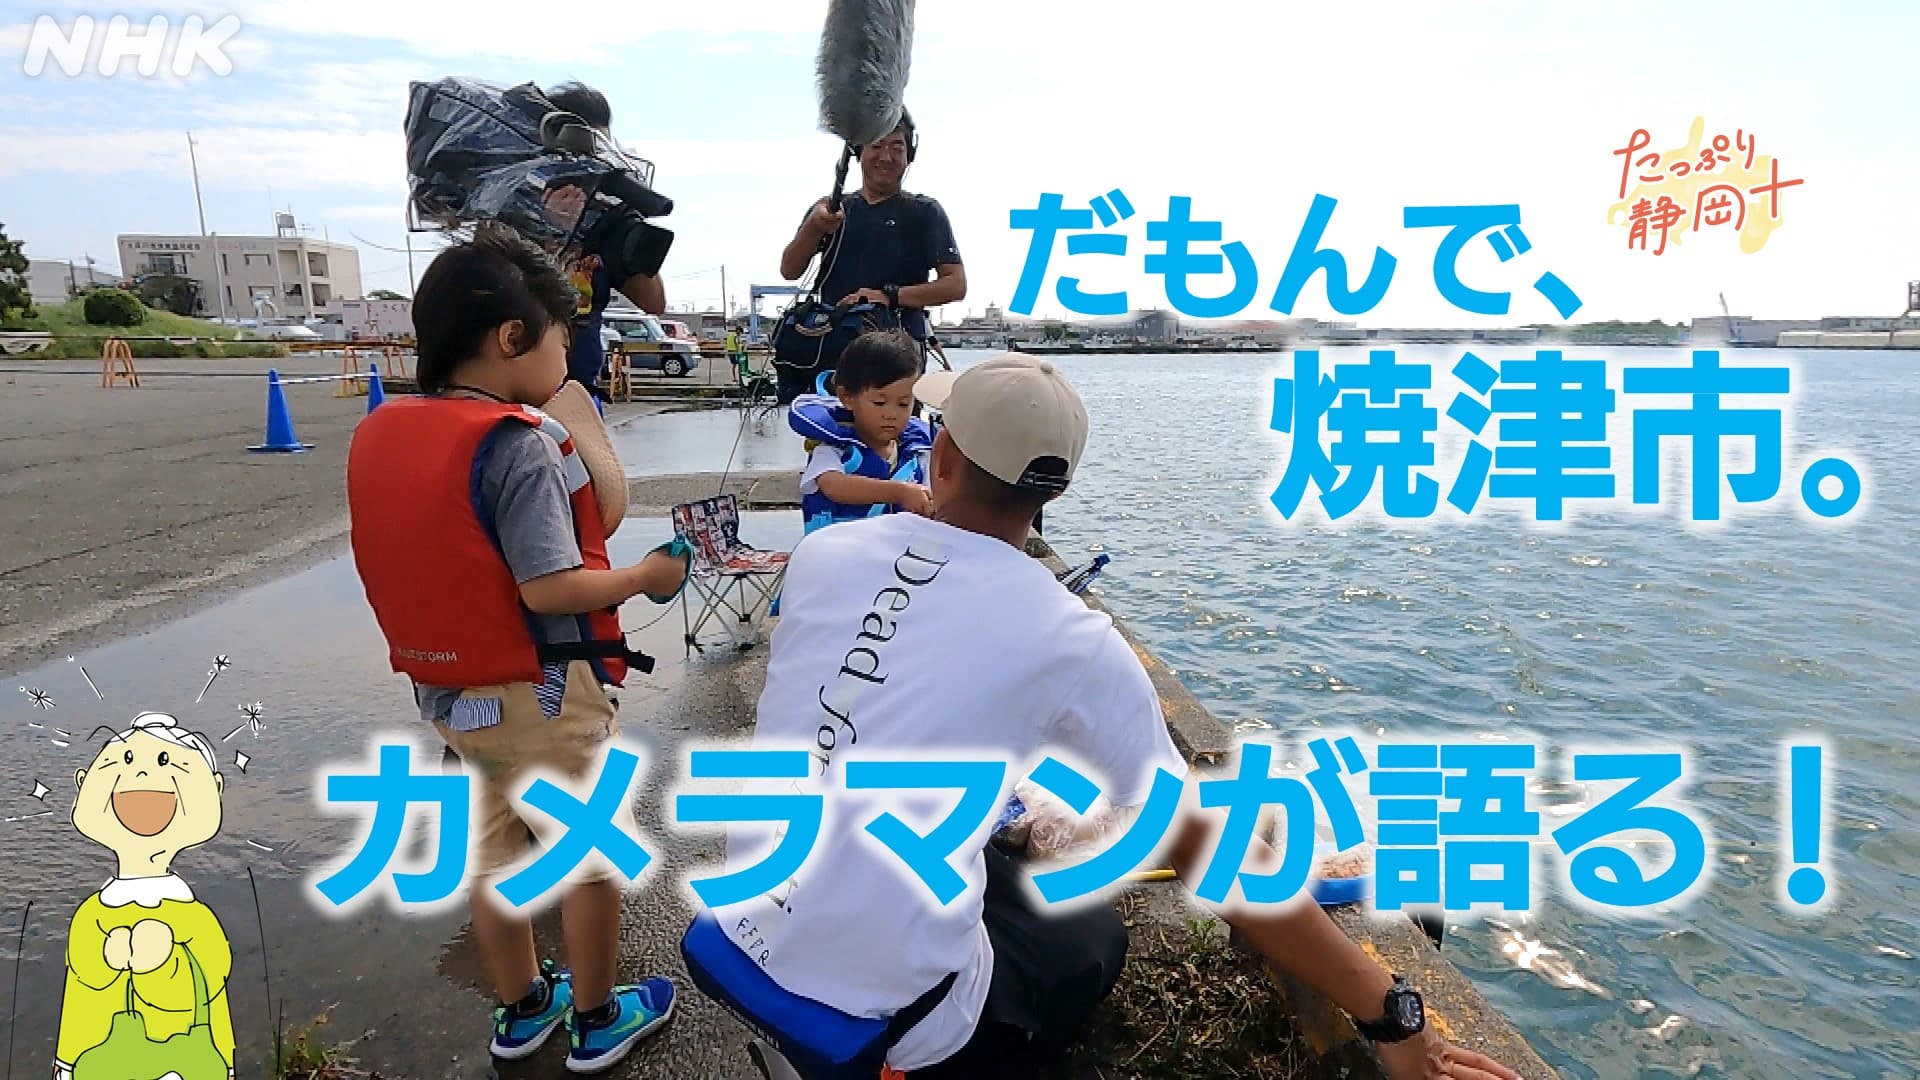 だもんで焼津 釣りにマグロに 撮影したNHKカメラマンが語る見どころと